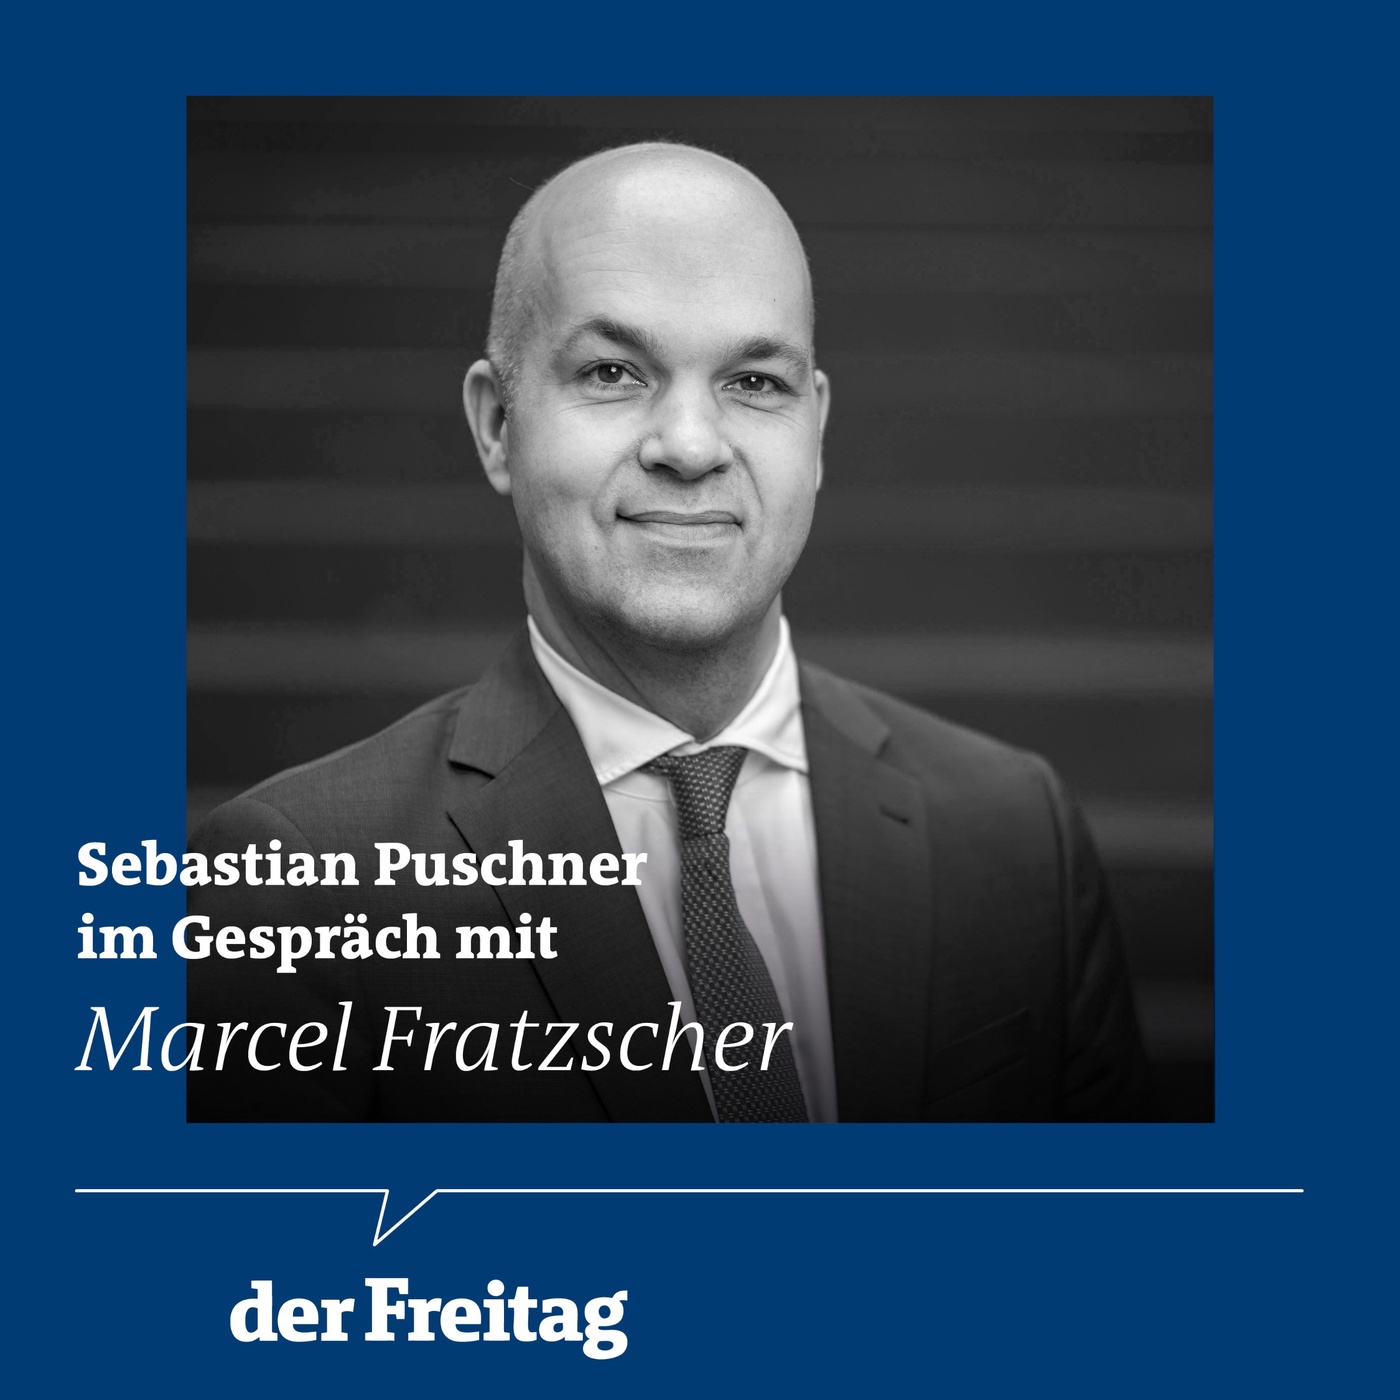 Marcel Fratzscher im Gespräch: „Die Spritpreisbremse ist reiner Populismus“